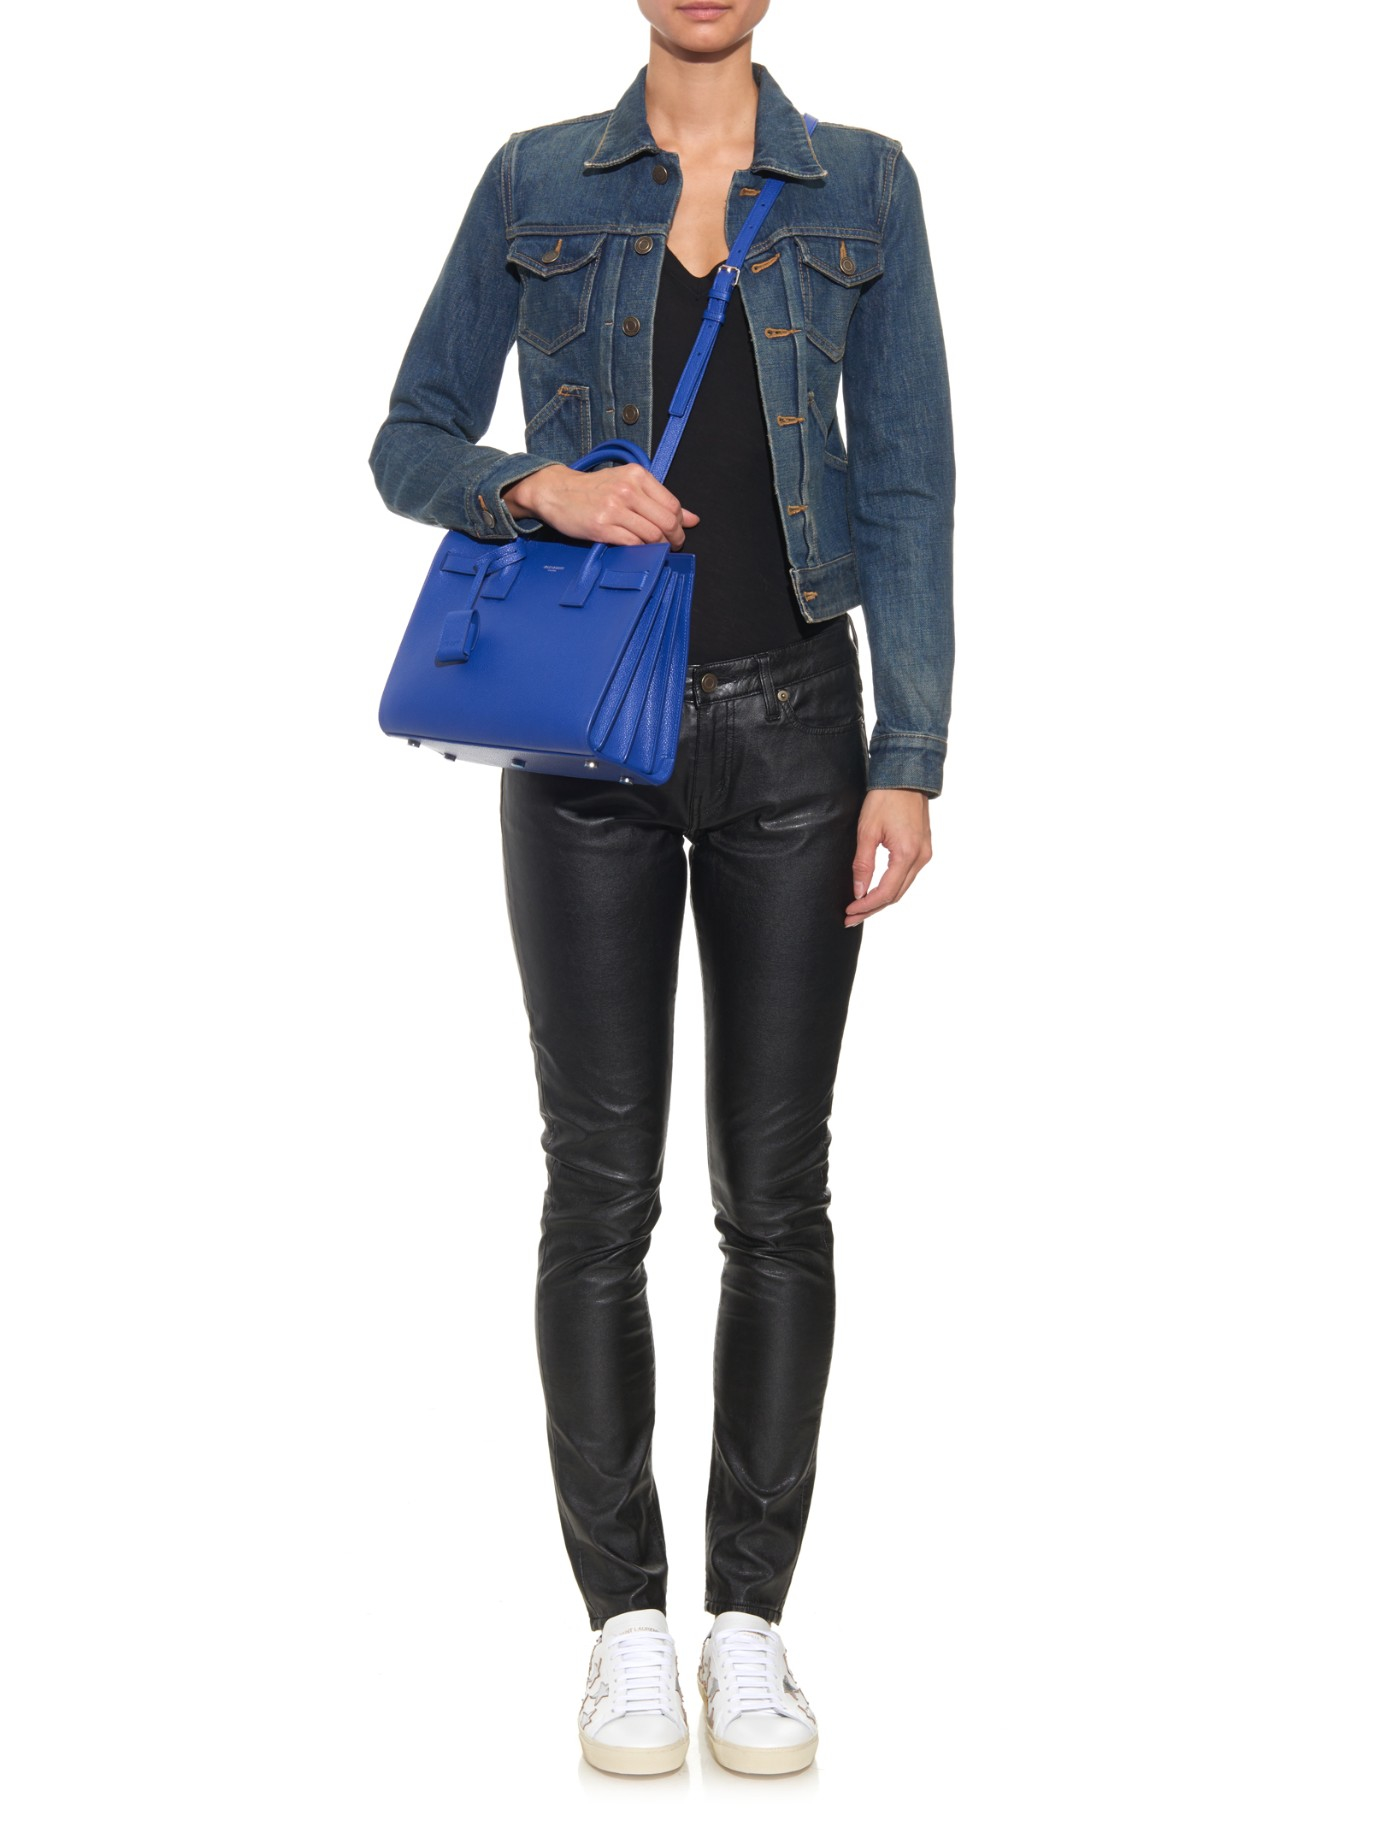 saint laurent handbag - sac de jour mini grained leather satchel bag, cobalt